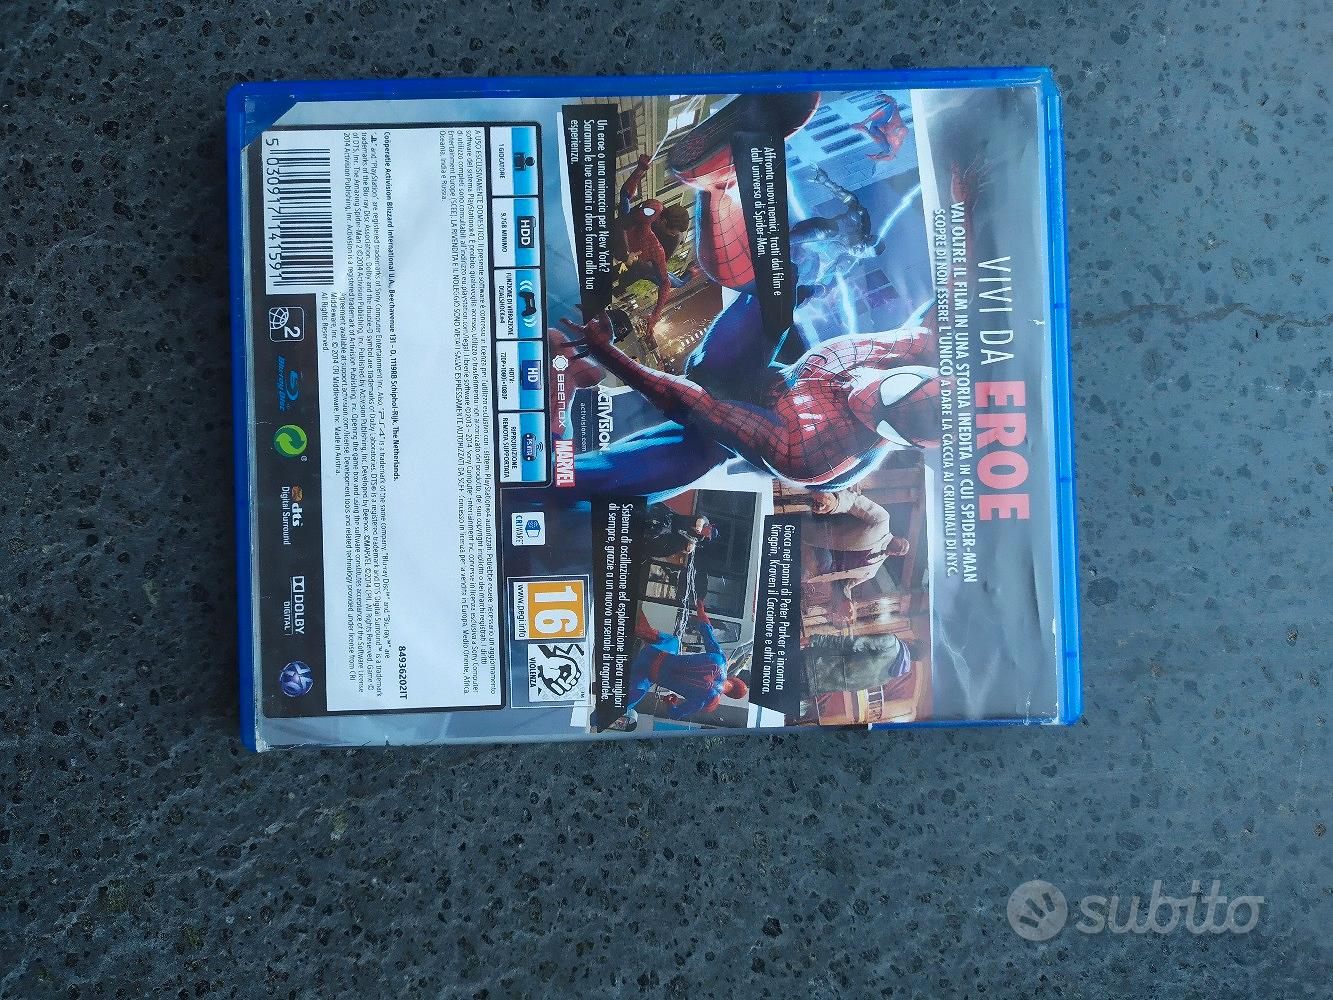 The Amazing Spider-Man 2 gioco PS4 in vendita: che prezzo!